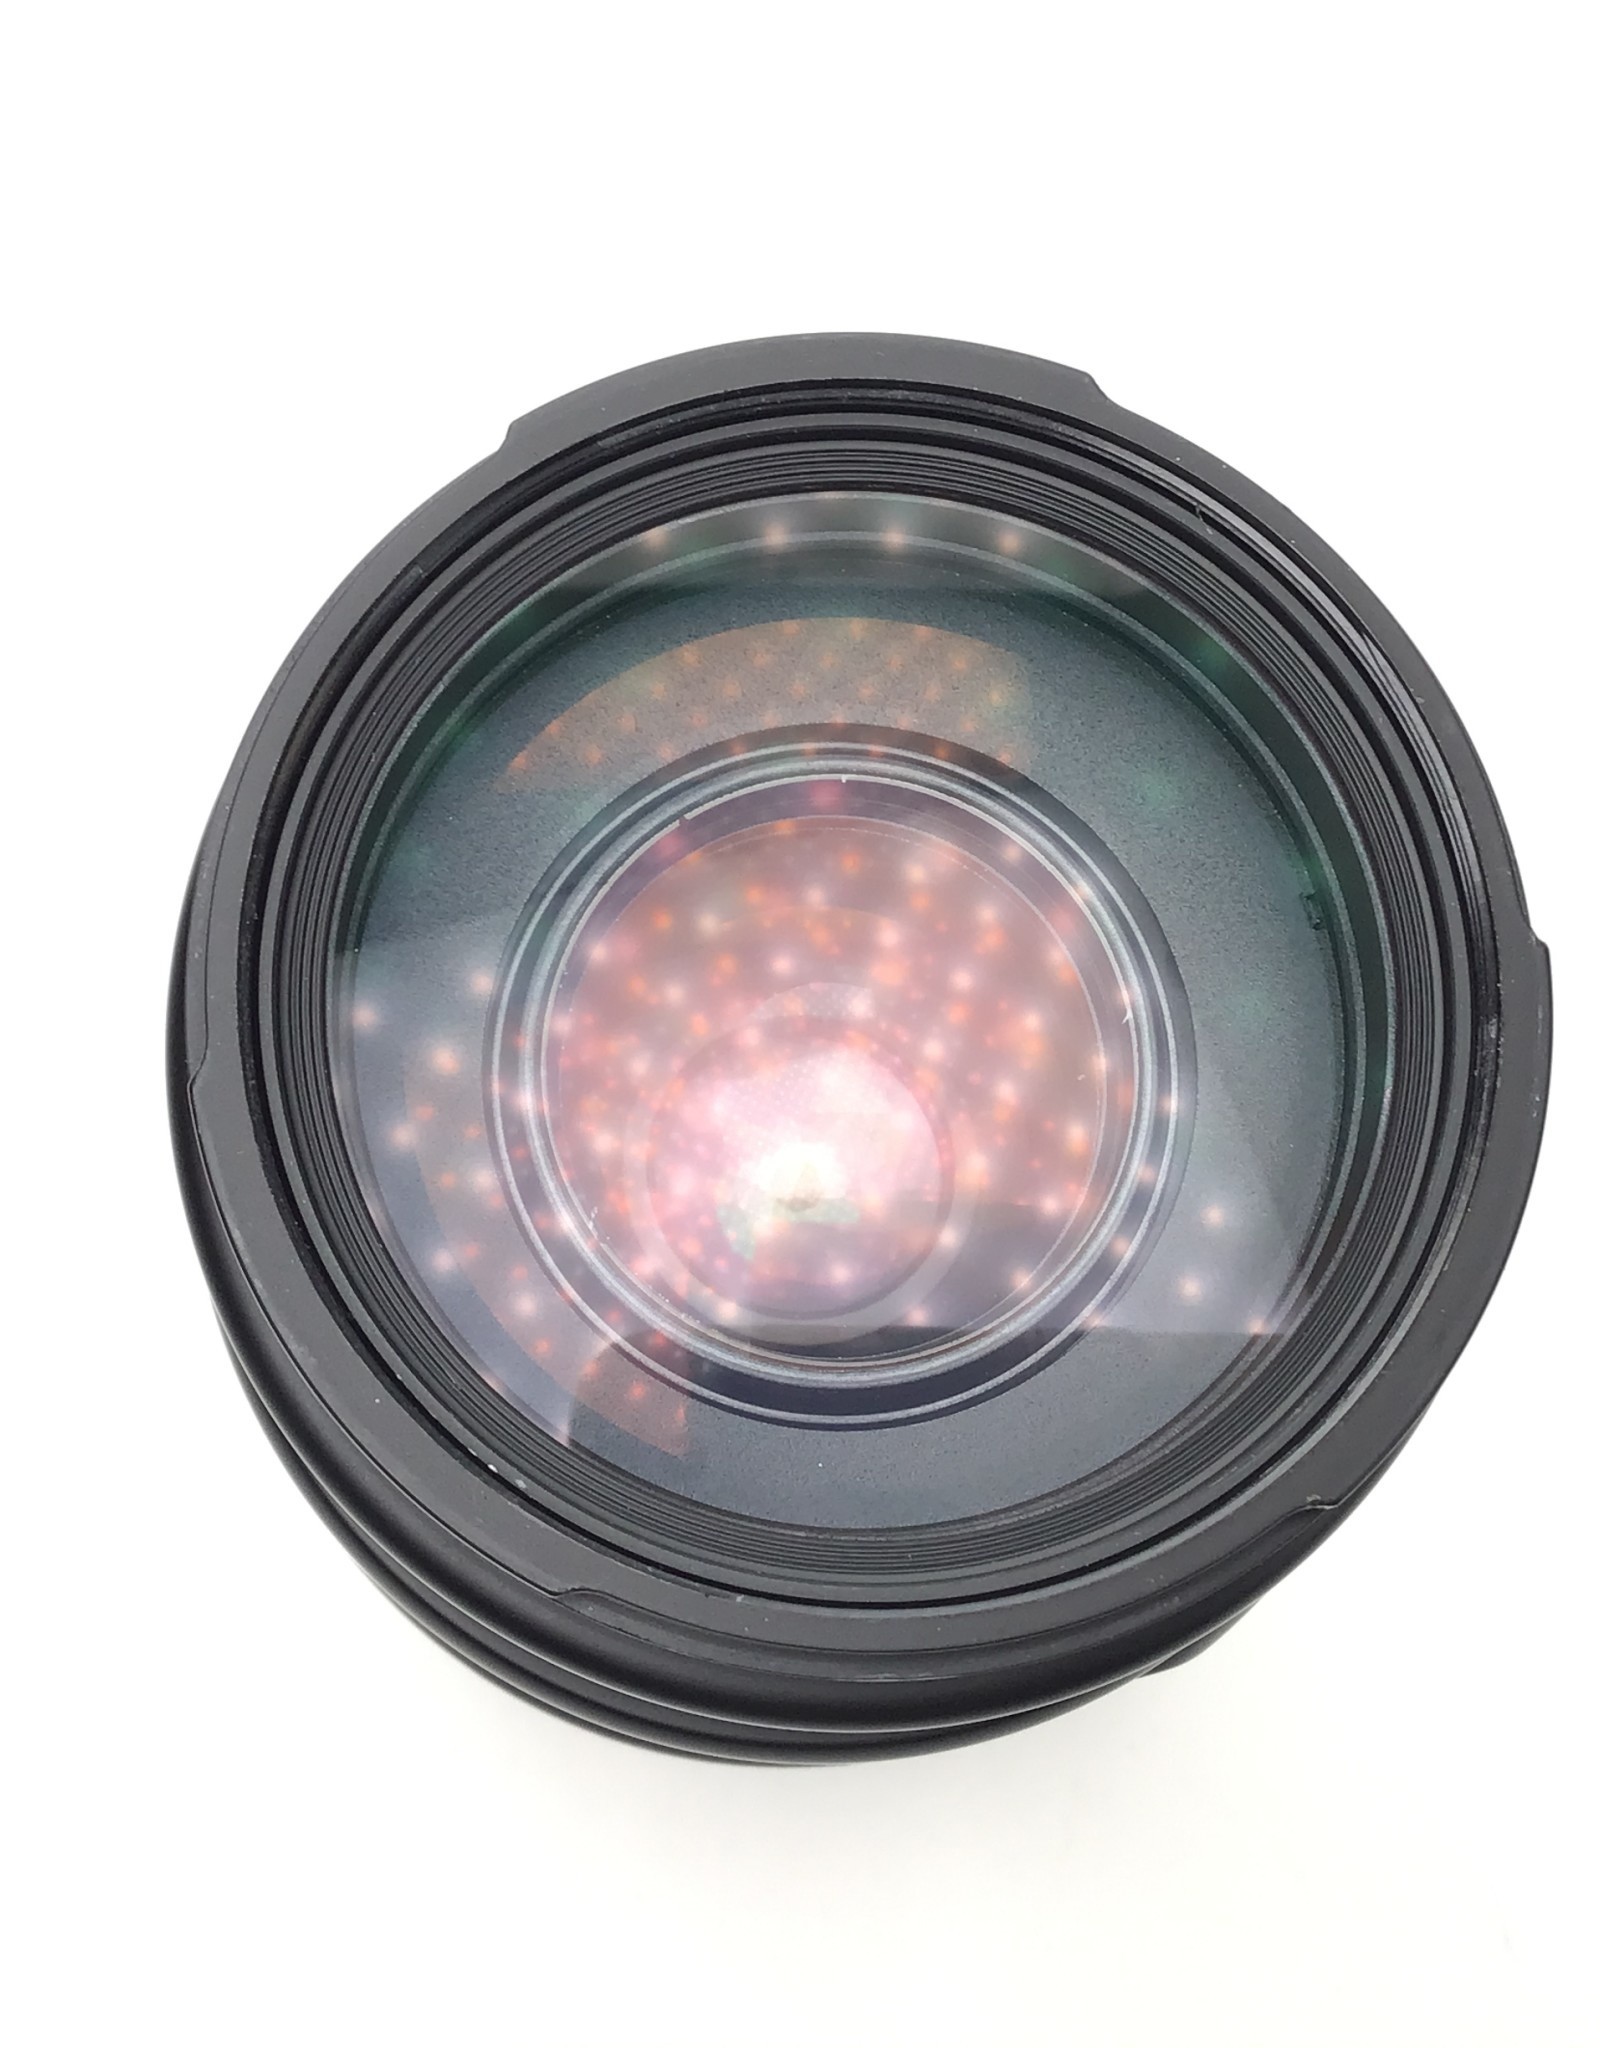 SIGMA Sigma AF 70-300mm f4-5.6 D Lens for Nikon Used Good